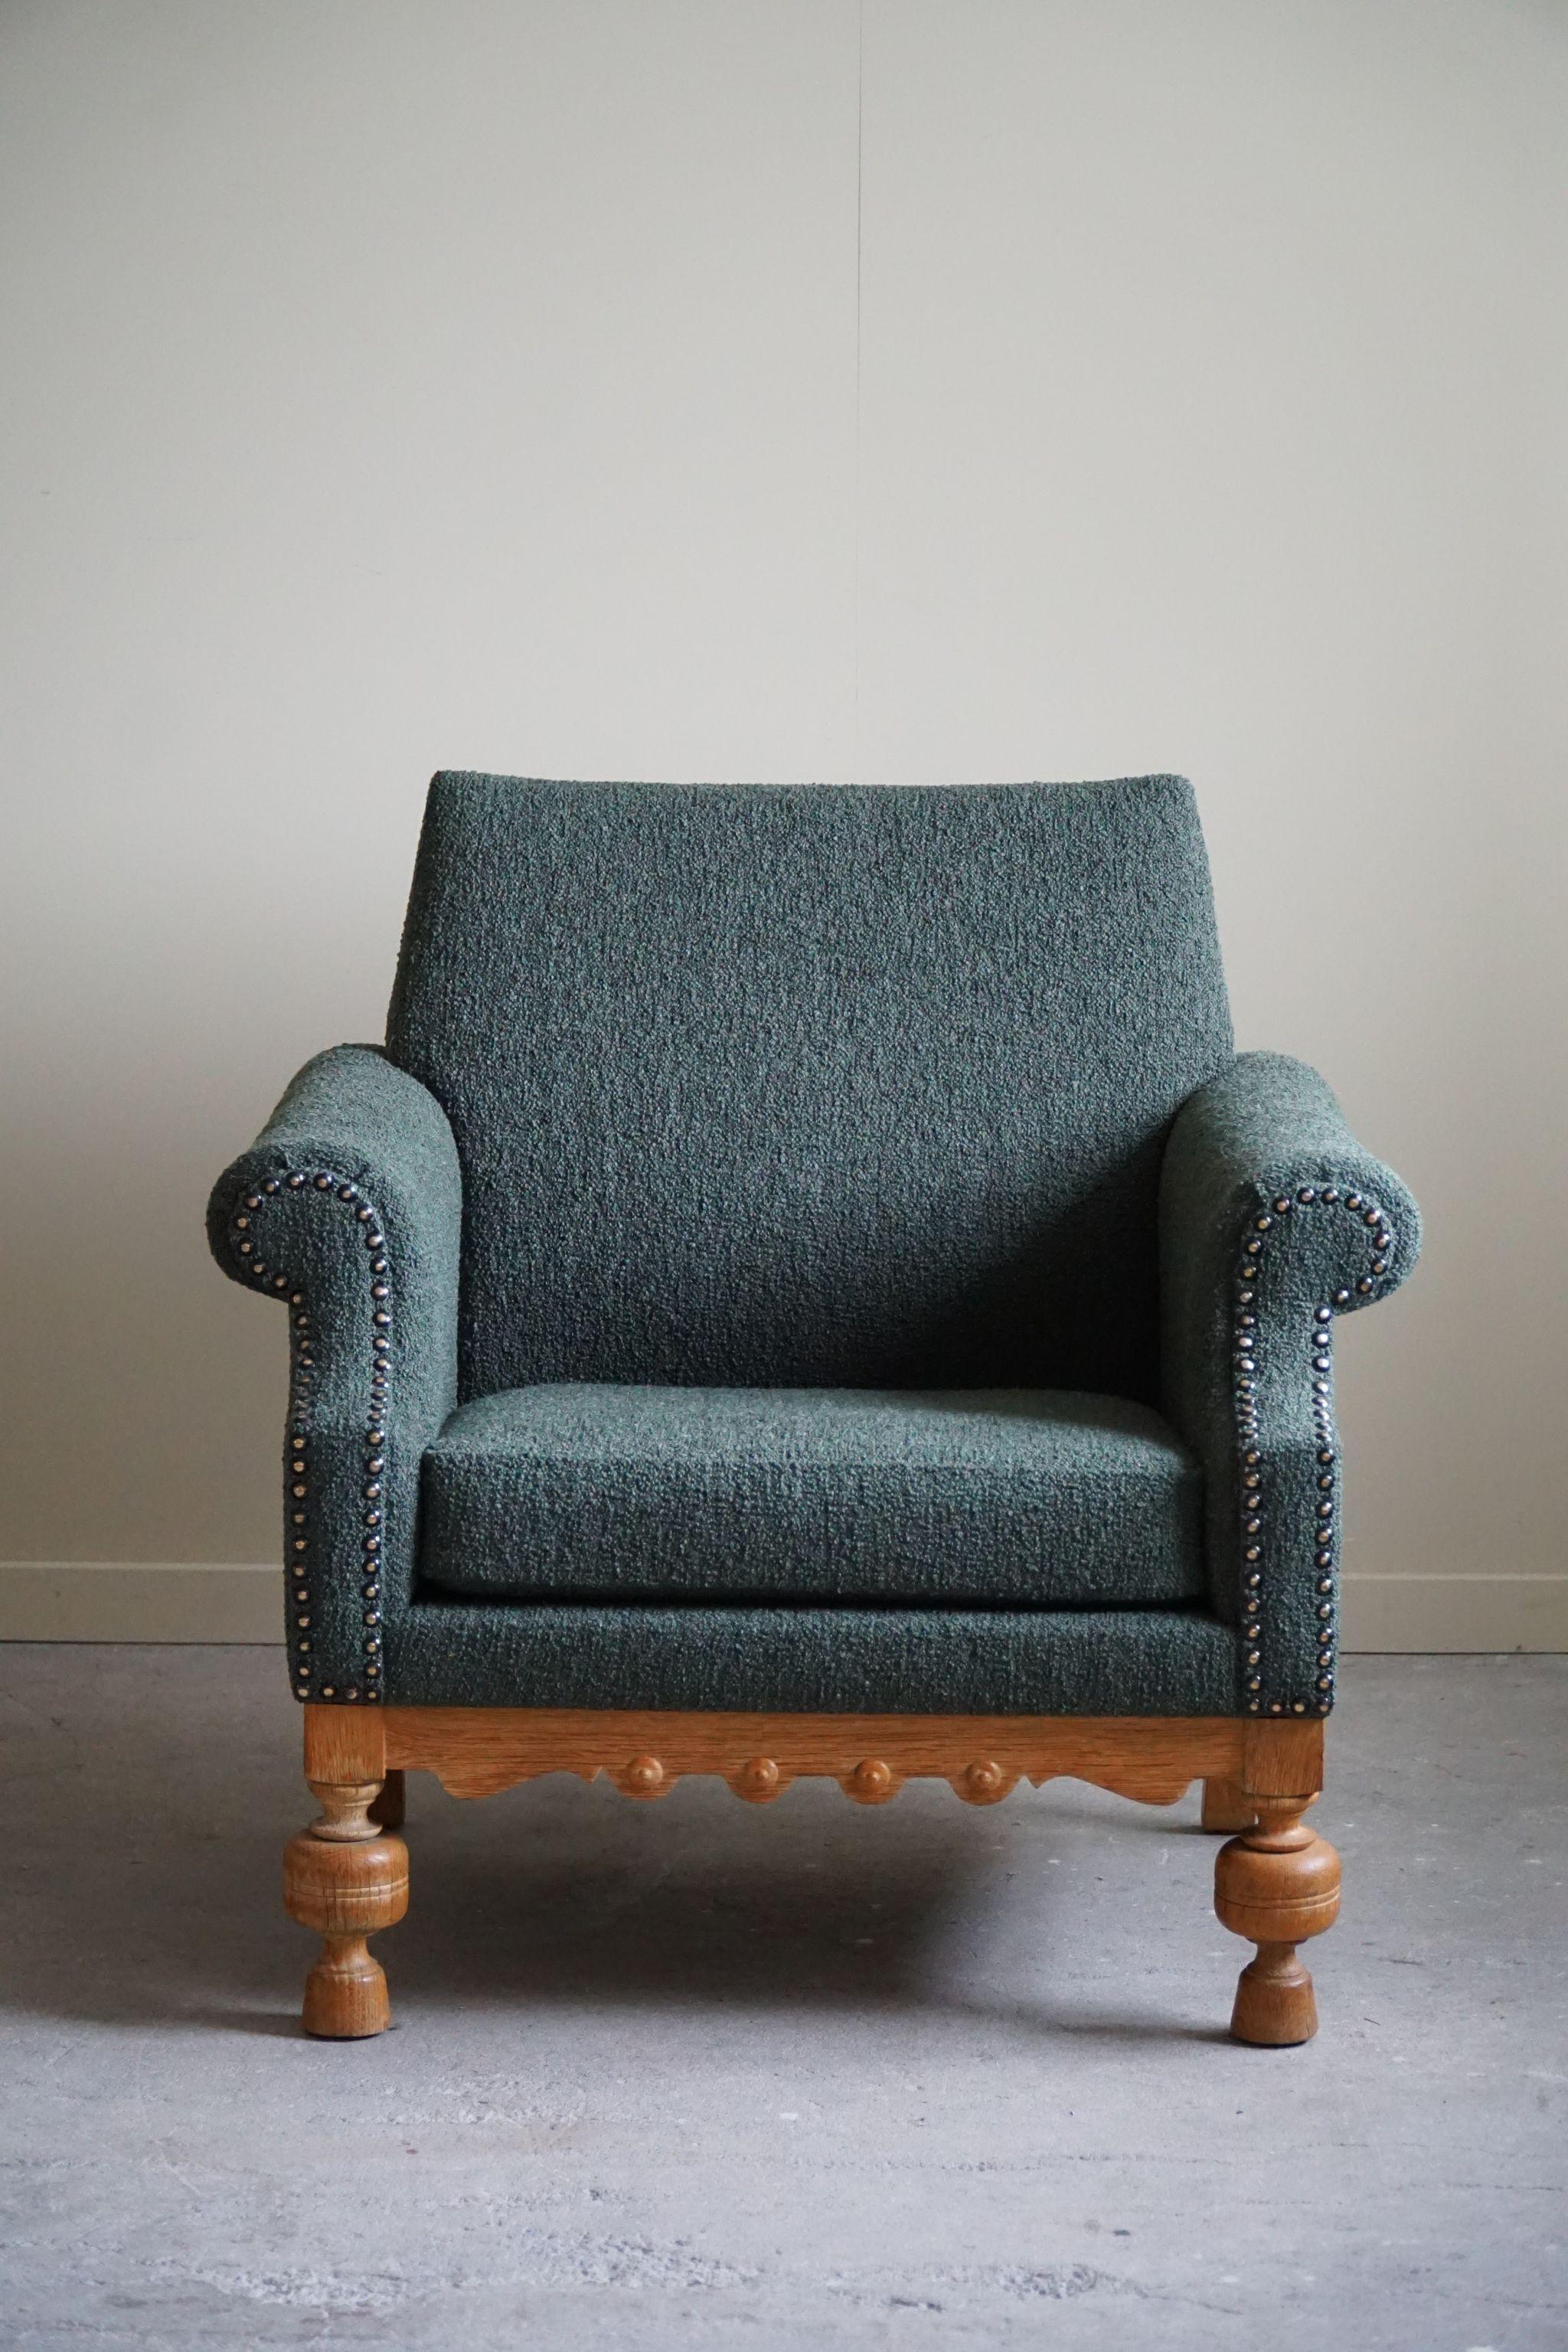 Lounge Chair in Oak & Green Bouclé, Danish Mid-Century Modern, 1950s For Sale 8